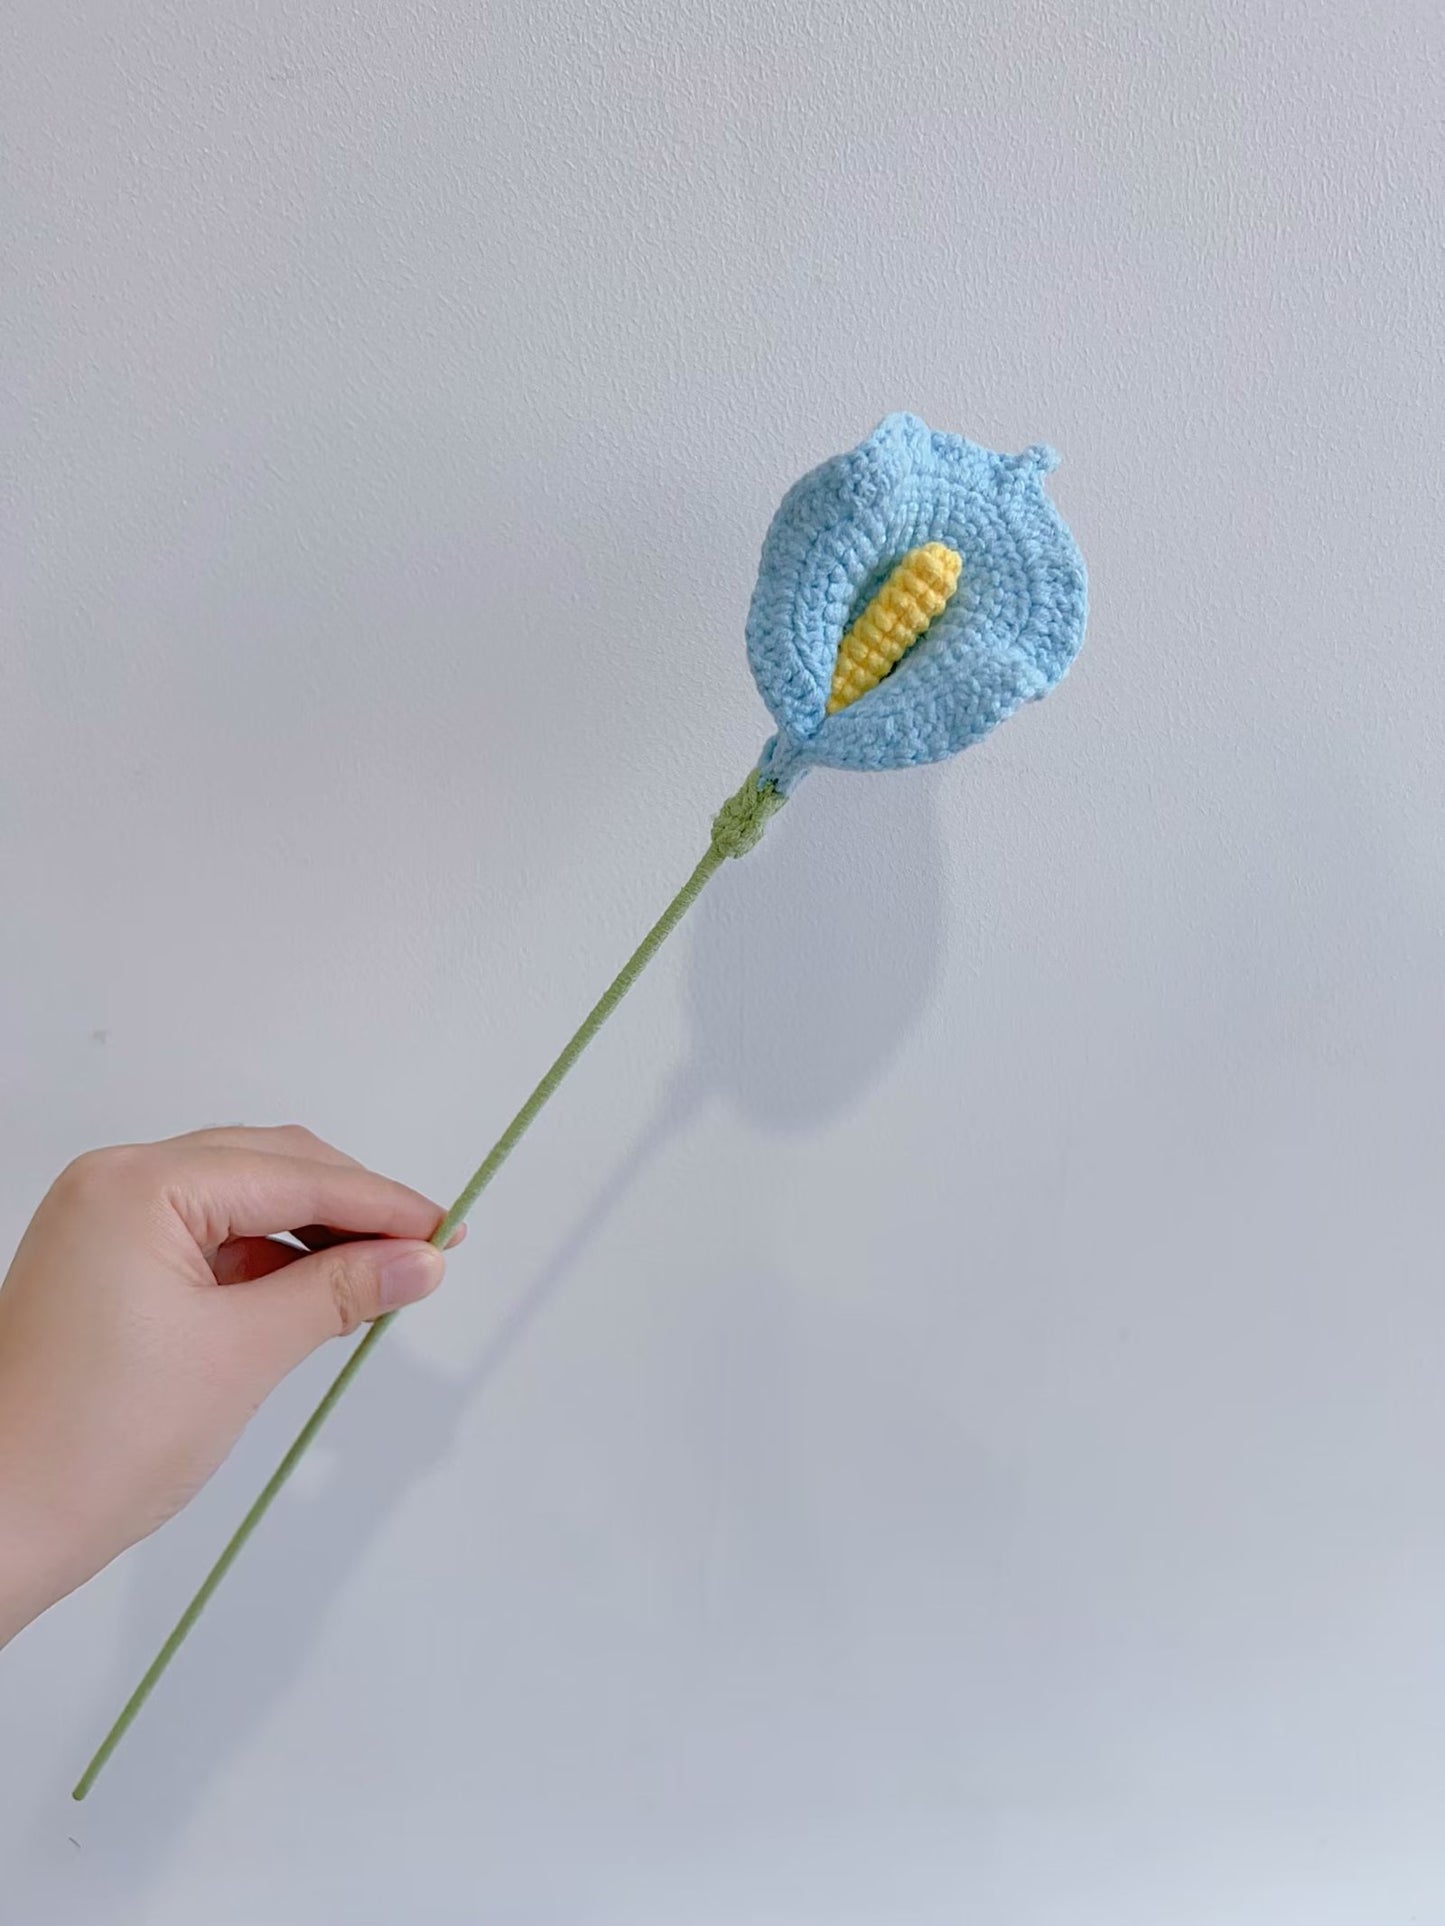 Paquete de patrón de flores de crochet (paquete 5 en 1)